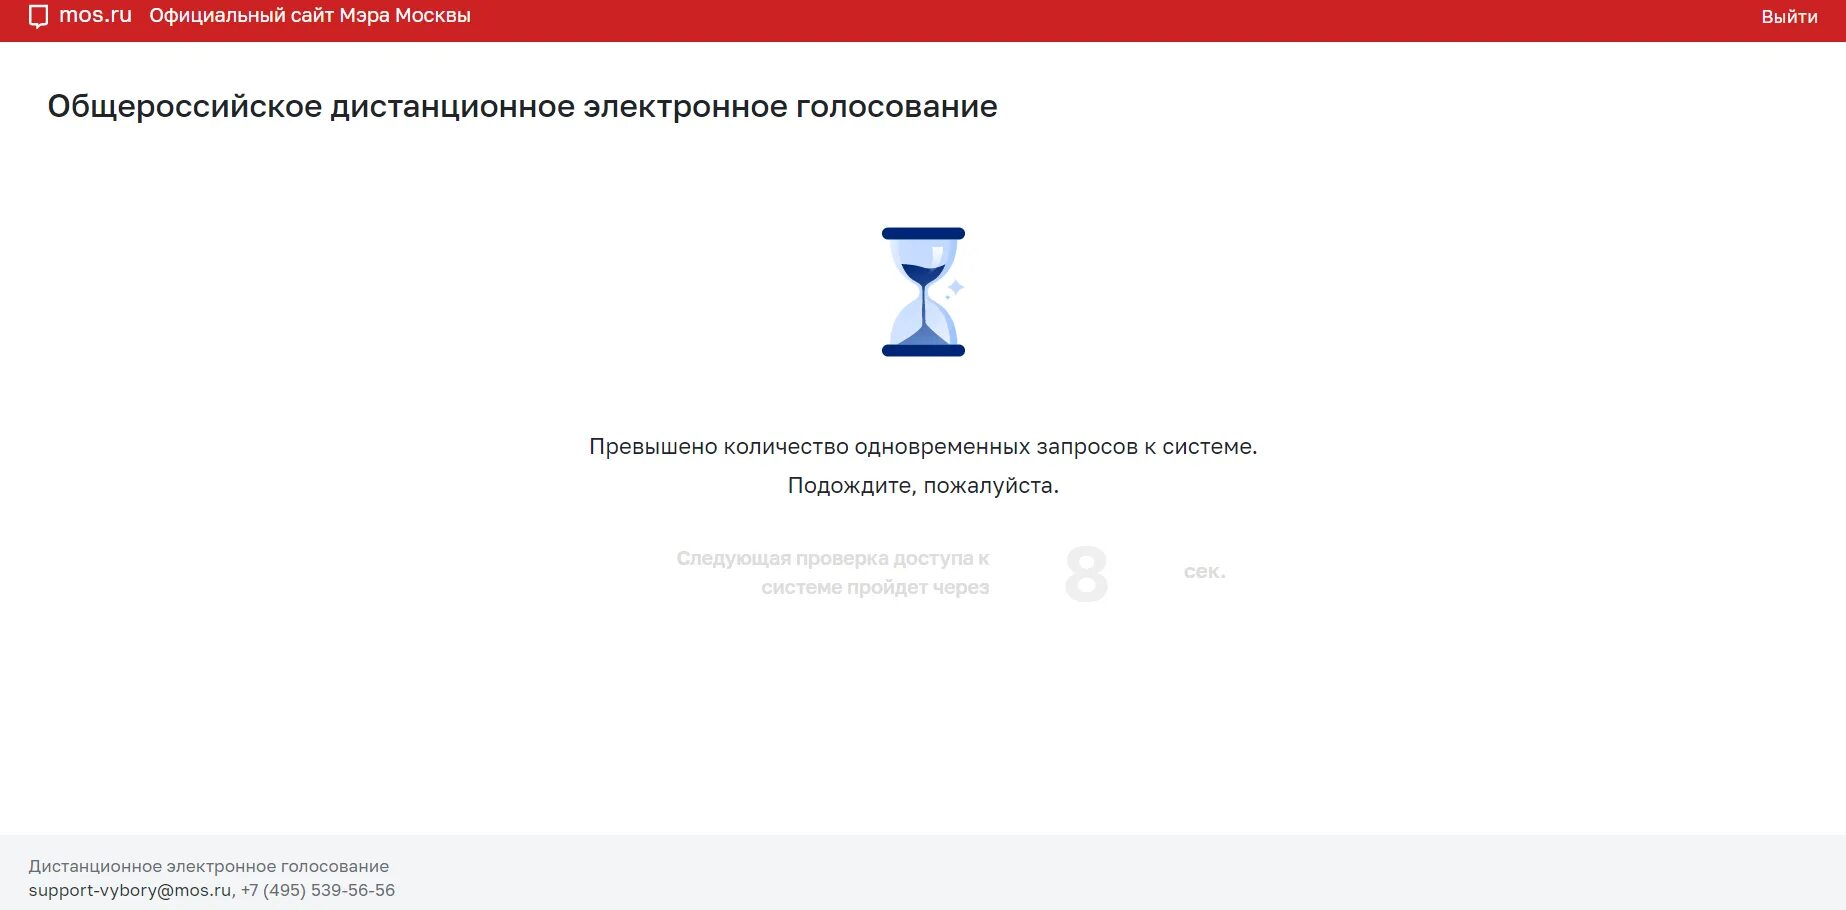 Мос ру запись голосование. Проблемы дистанционного электронного голосования. Электронное голосование Мос ру. Mos.ru приложение. Вы уже проголосовали Мос ру.